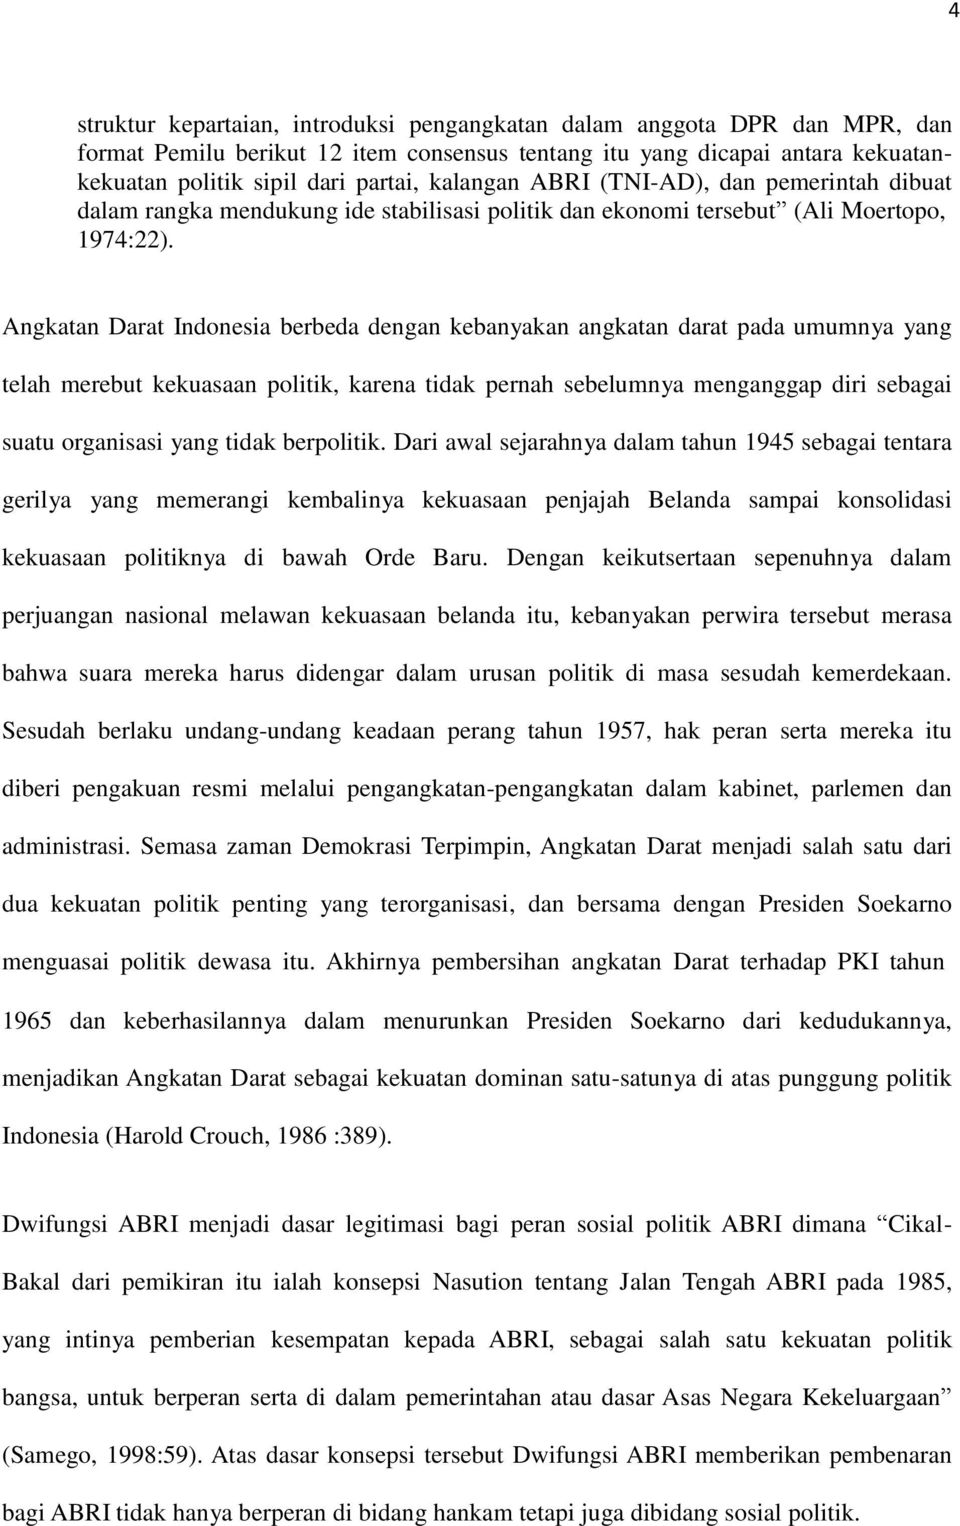 Angkatan Darat Indonesia berbeda dengan kebanyakan angkatan darat pada umumnya yang telah merebut kekuasaan politik, karena tidak pernah sebelumnya menganggap diri sebagai suatu organisasi yang tidak